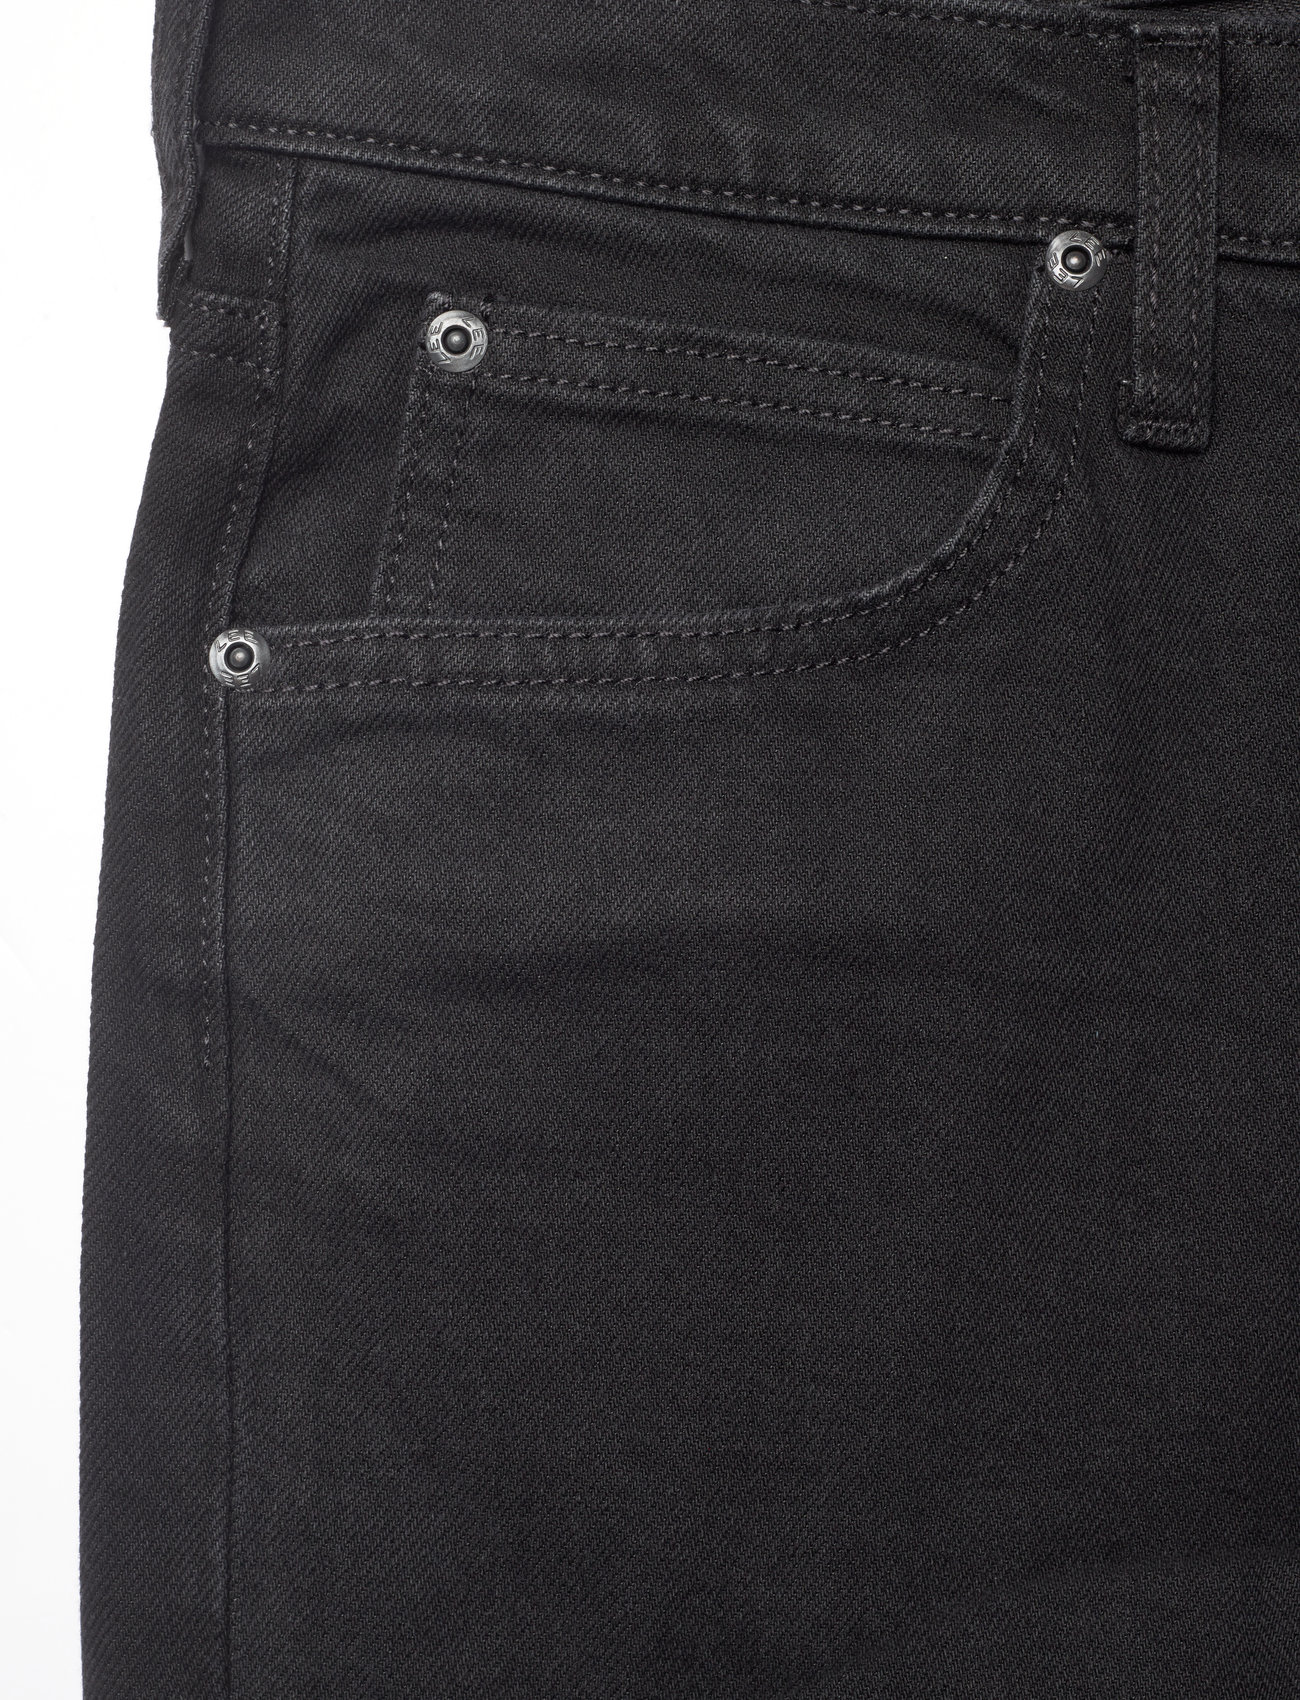 Lee Jeans - WEST - džinsi - black rinse - 1